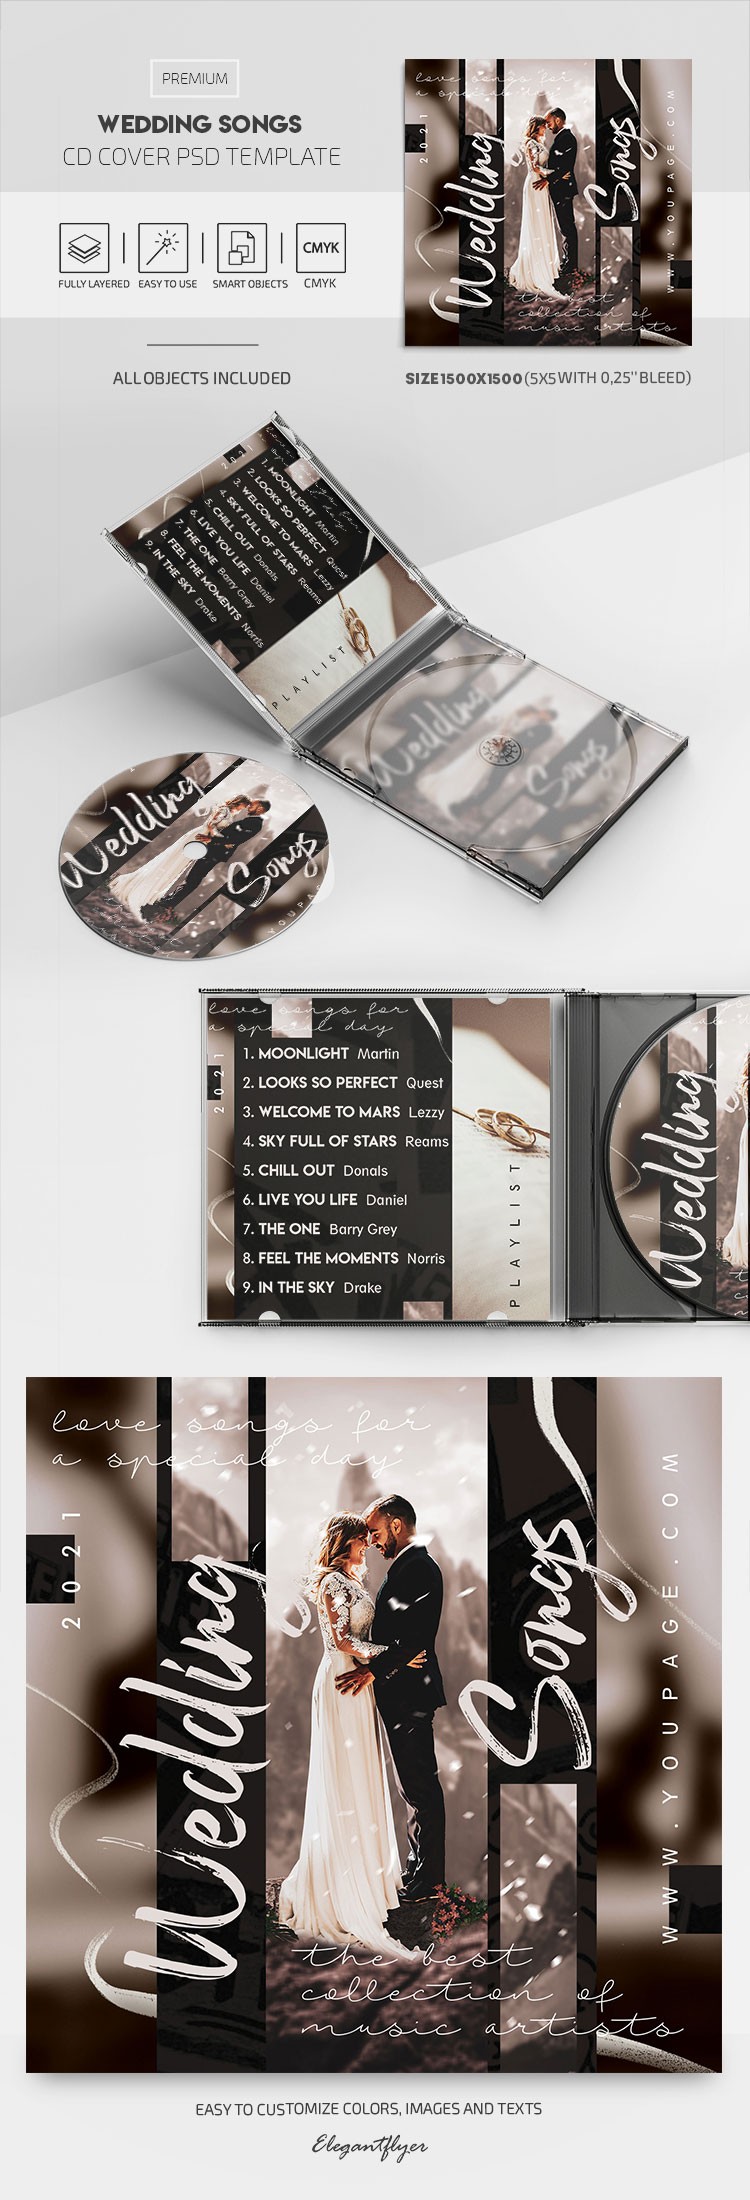 Hochzeitslieder CD-Cover by ElegantFlyer